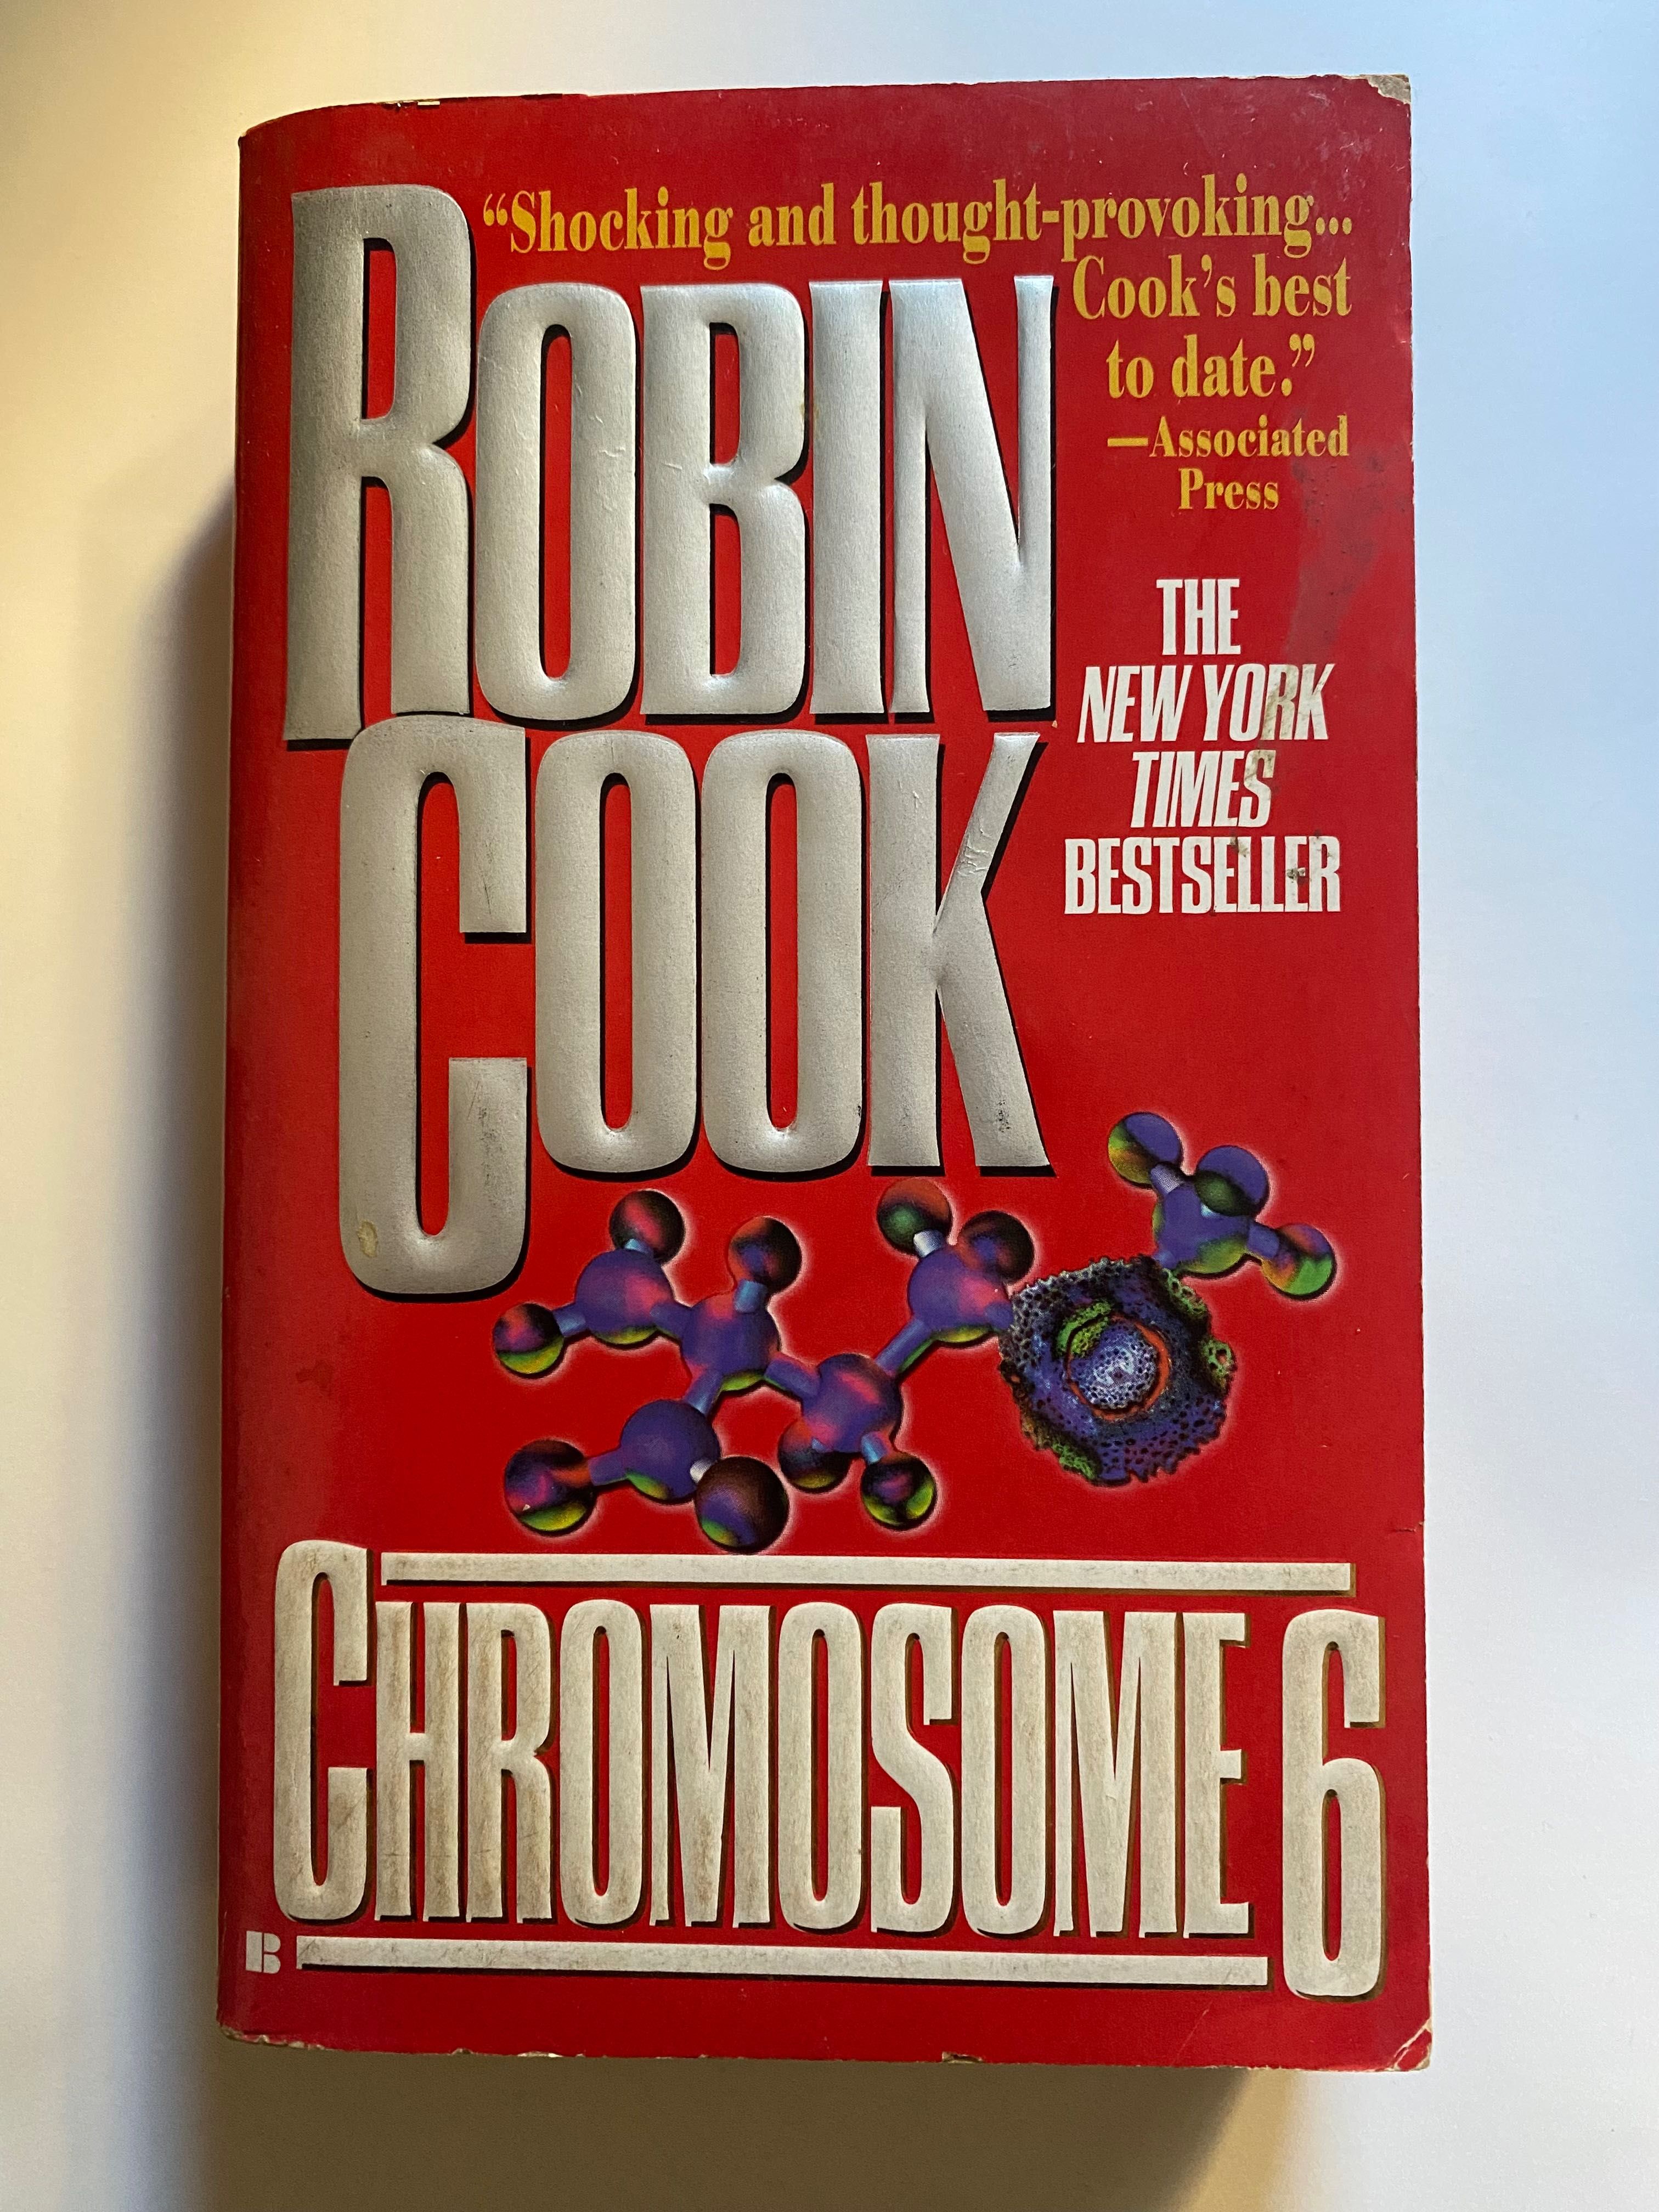 Livro " Chromosome 6 " , de Robin Cook - Em inglês